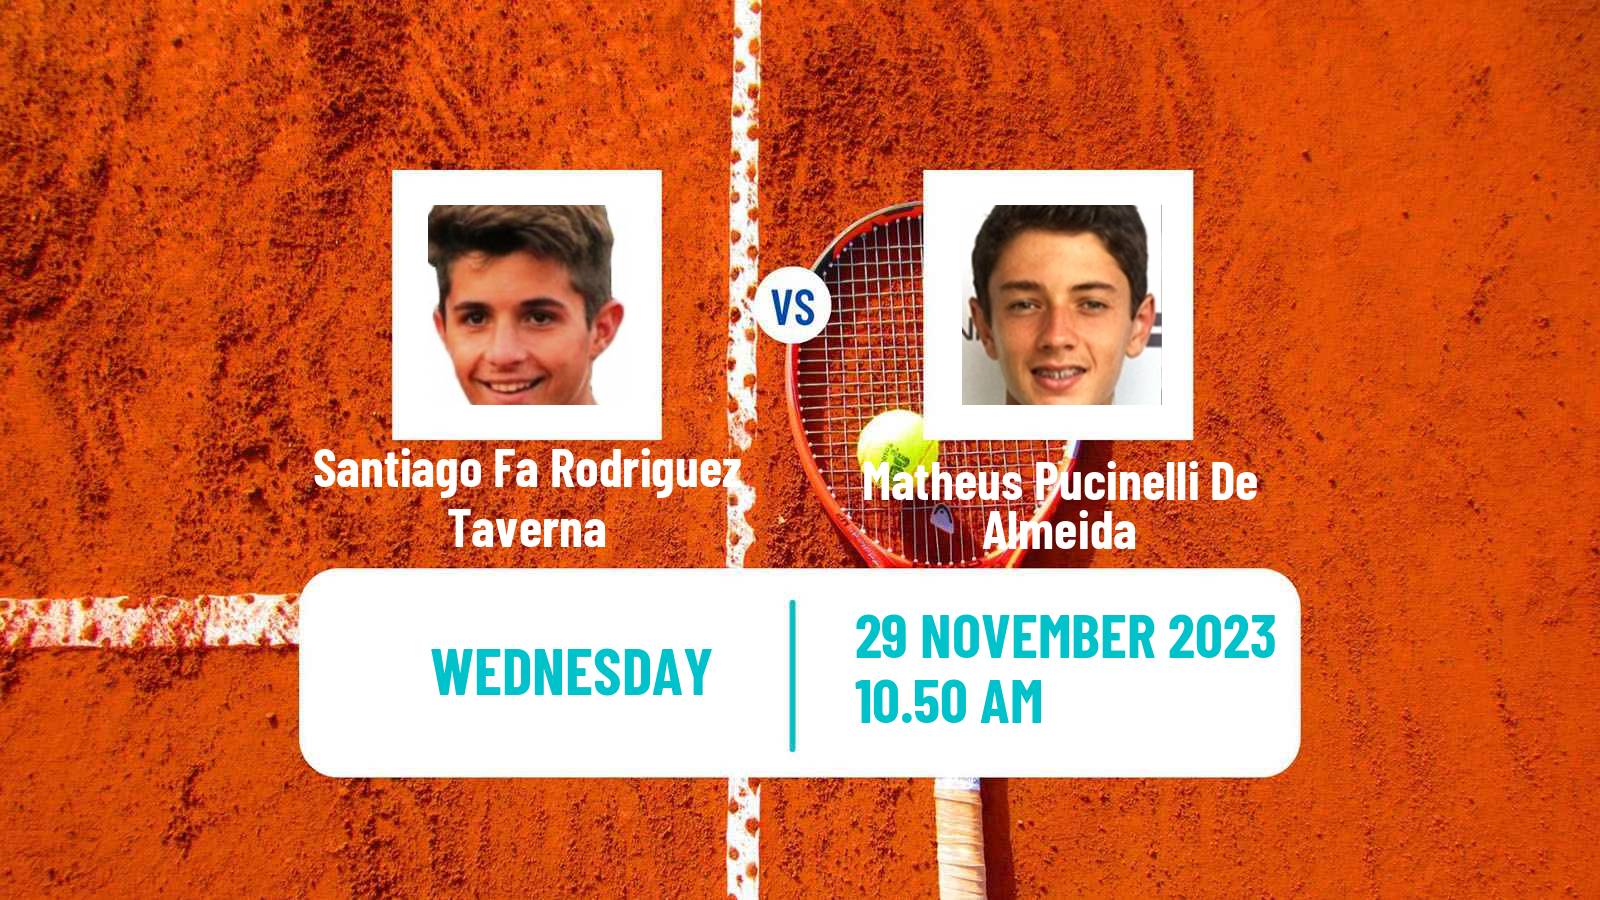 Tennis Temuco Challenger Men Santiago Fa Rodriguez Taverna - Matheus Pucinelli De Almeida